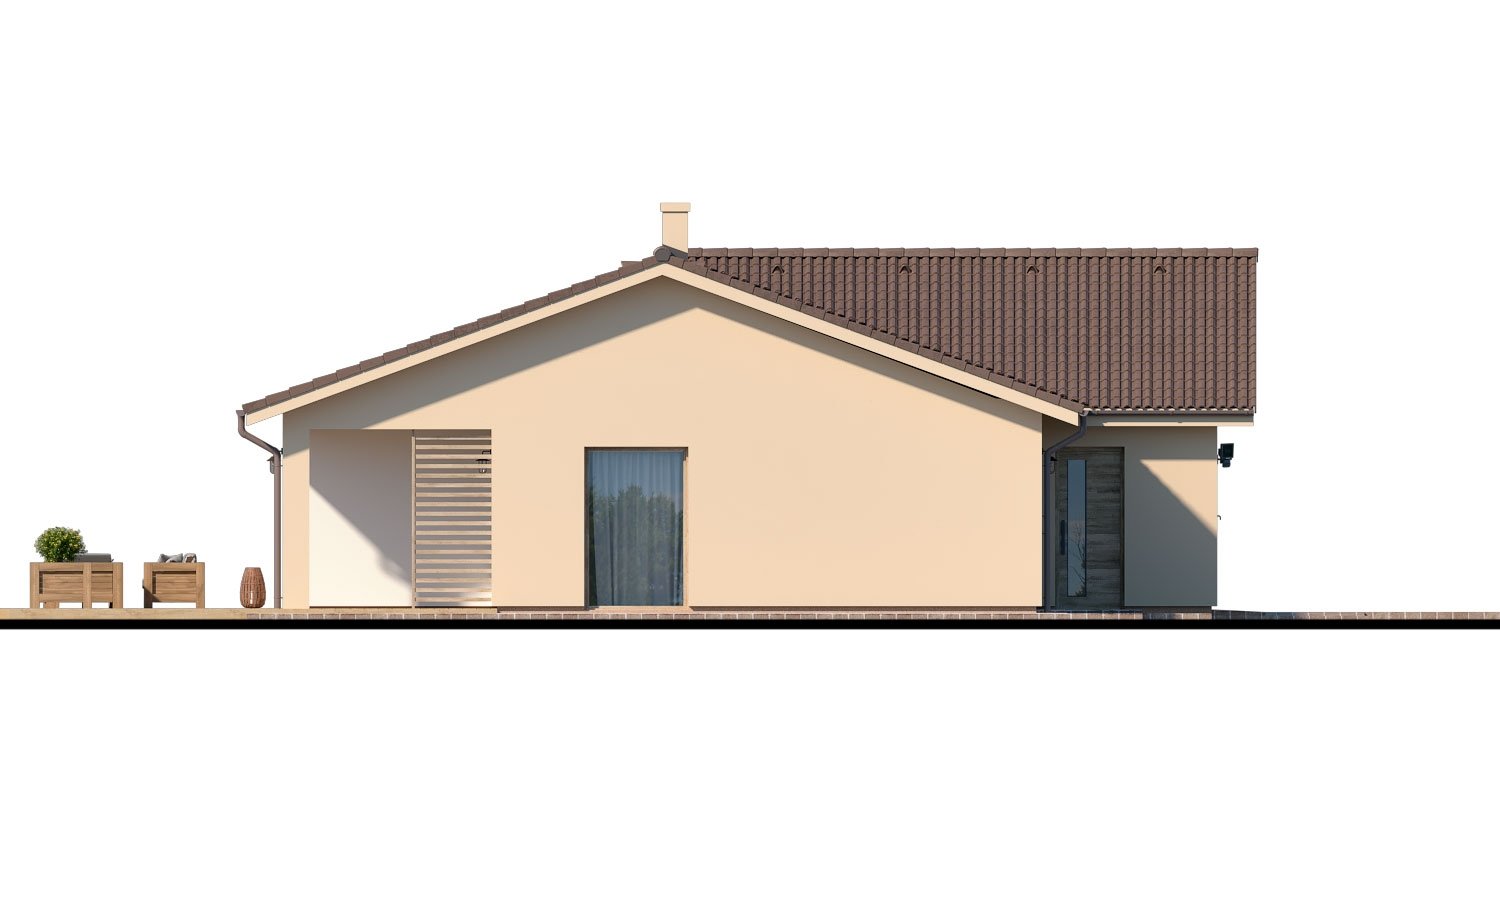 Pohľad 4. - Velký 4-pokojový bungalov s dvougaráží a terasou, přístupnou se všech obytných místností.